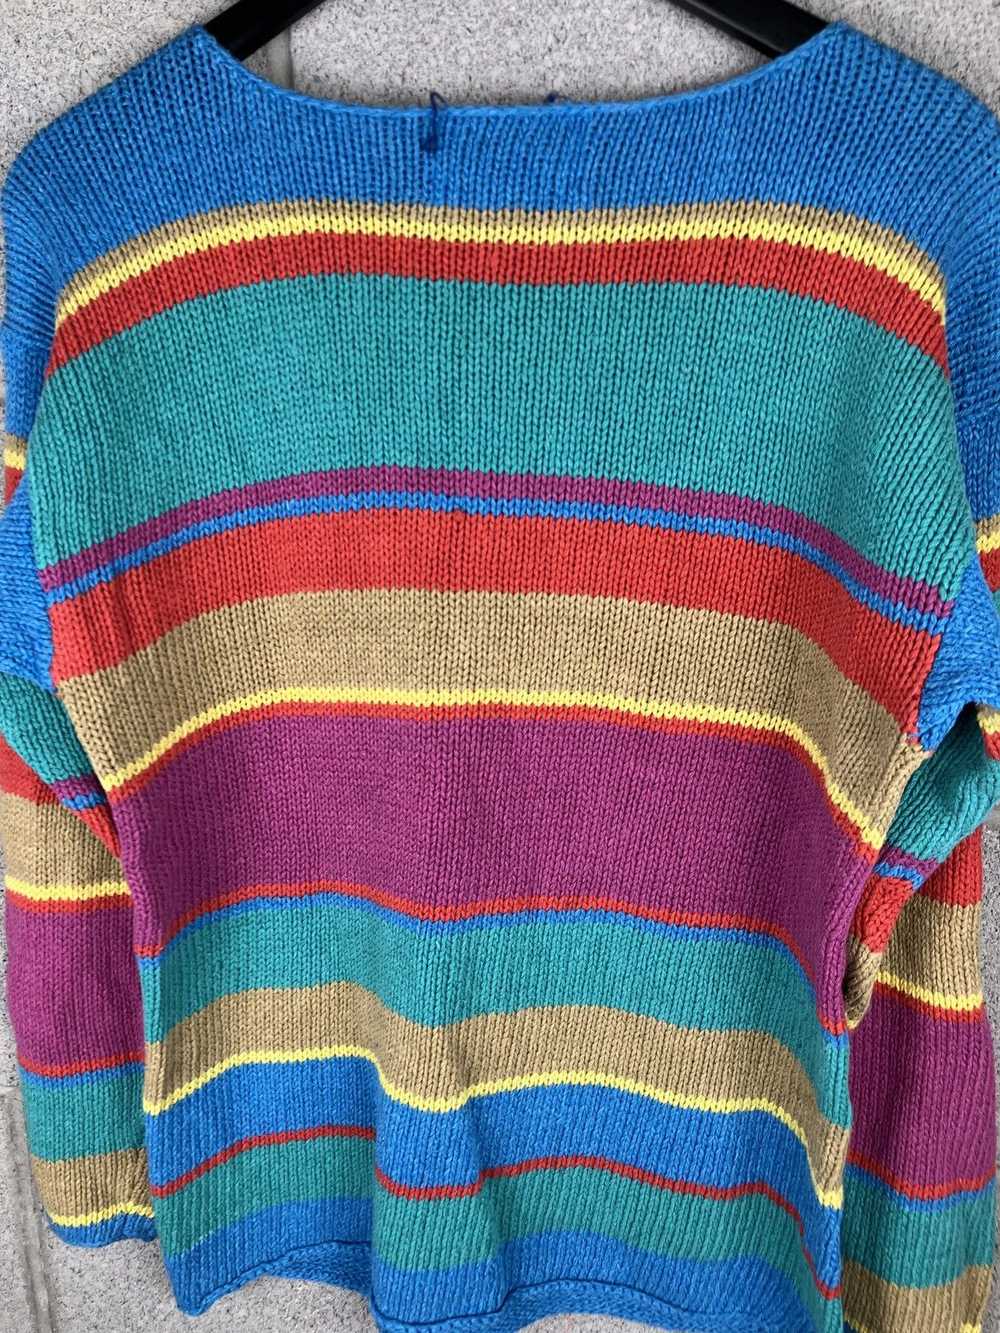 Coloured Cable Knit Sweater × Ralph Lauren × Vint… - image 7